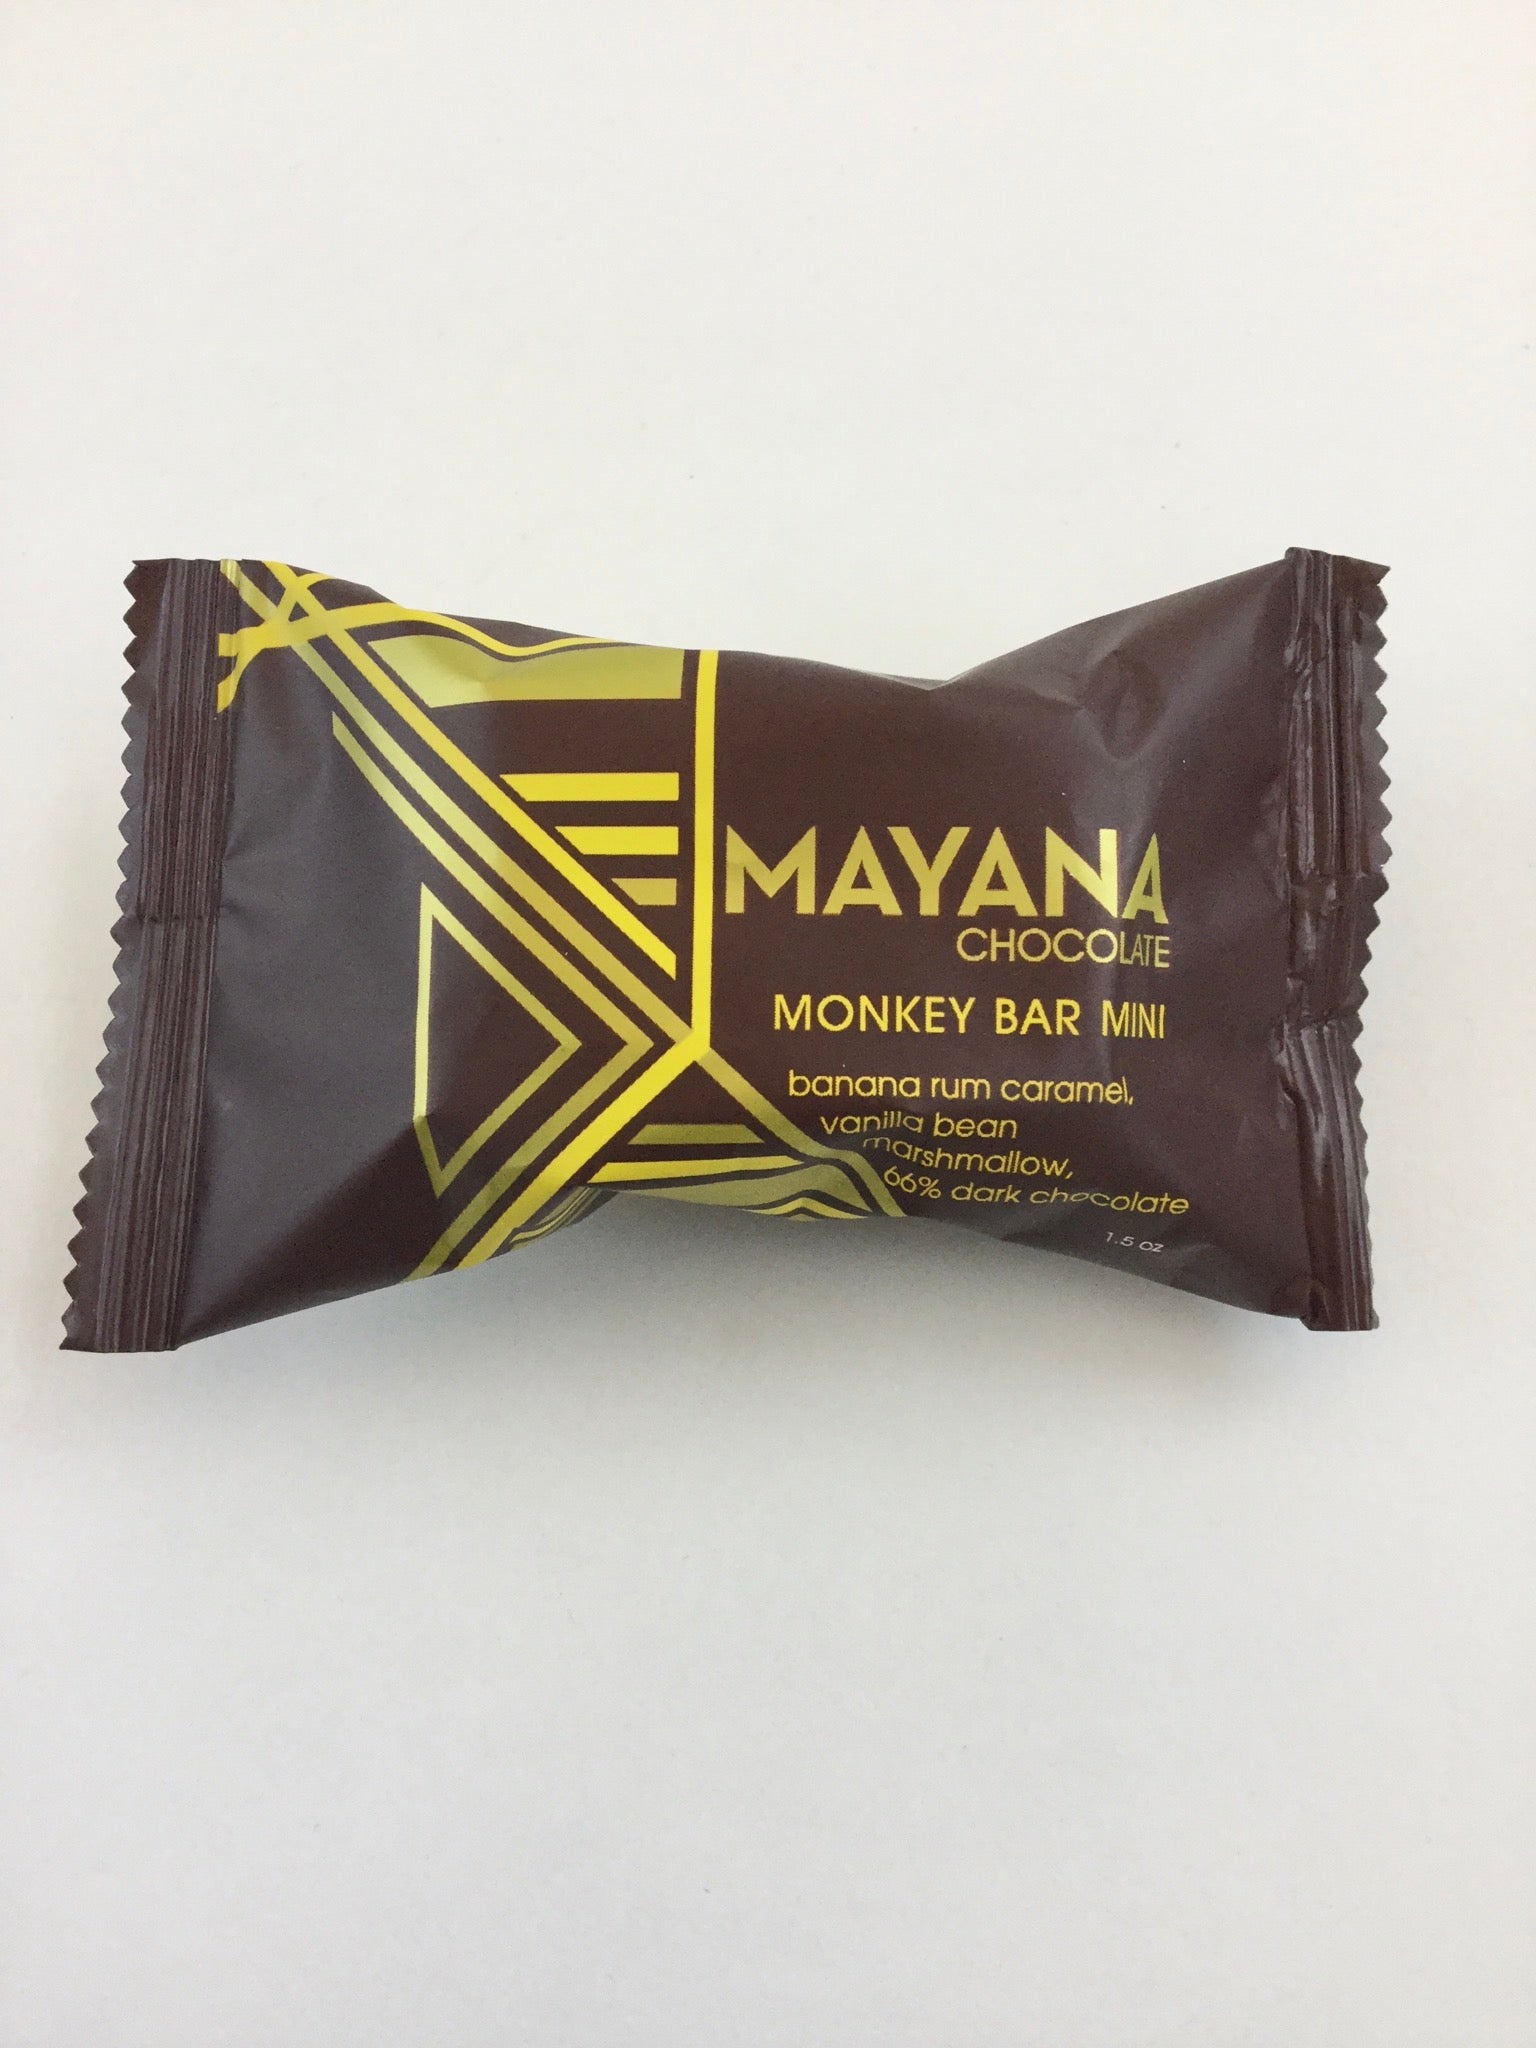 Mini Chocolate bars from Mayana